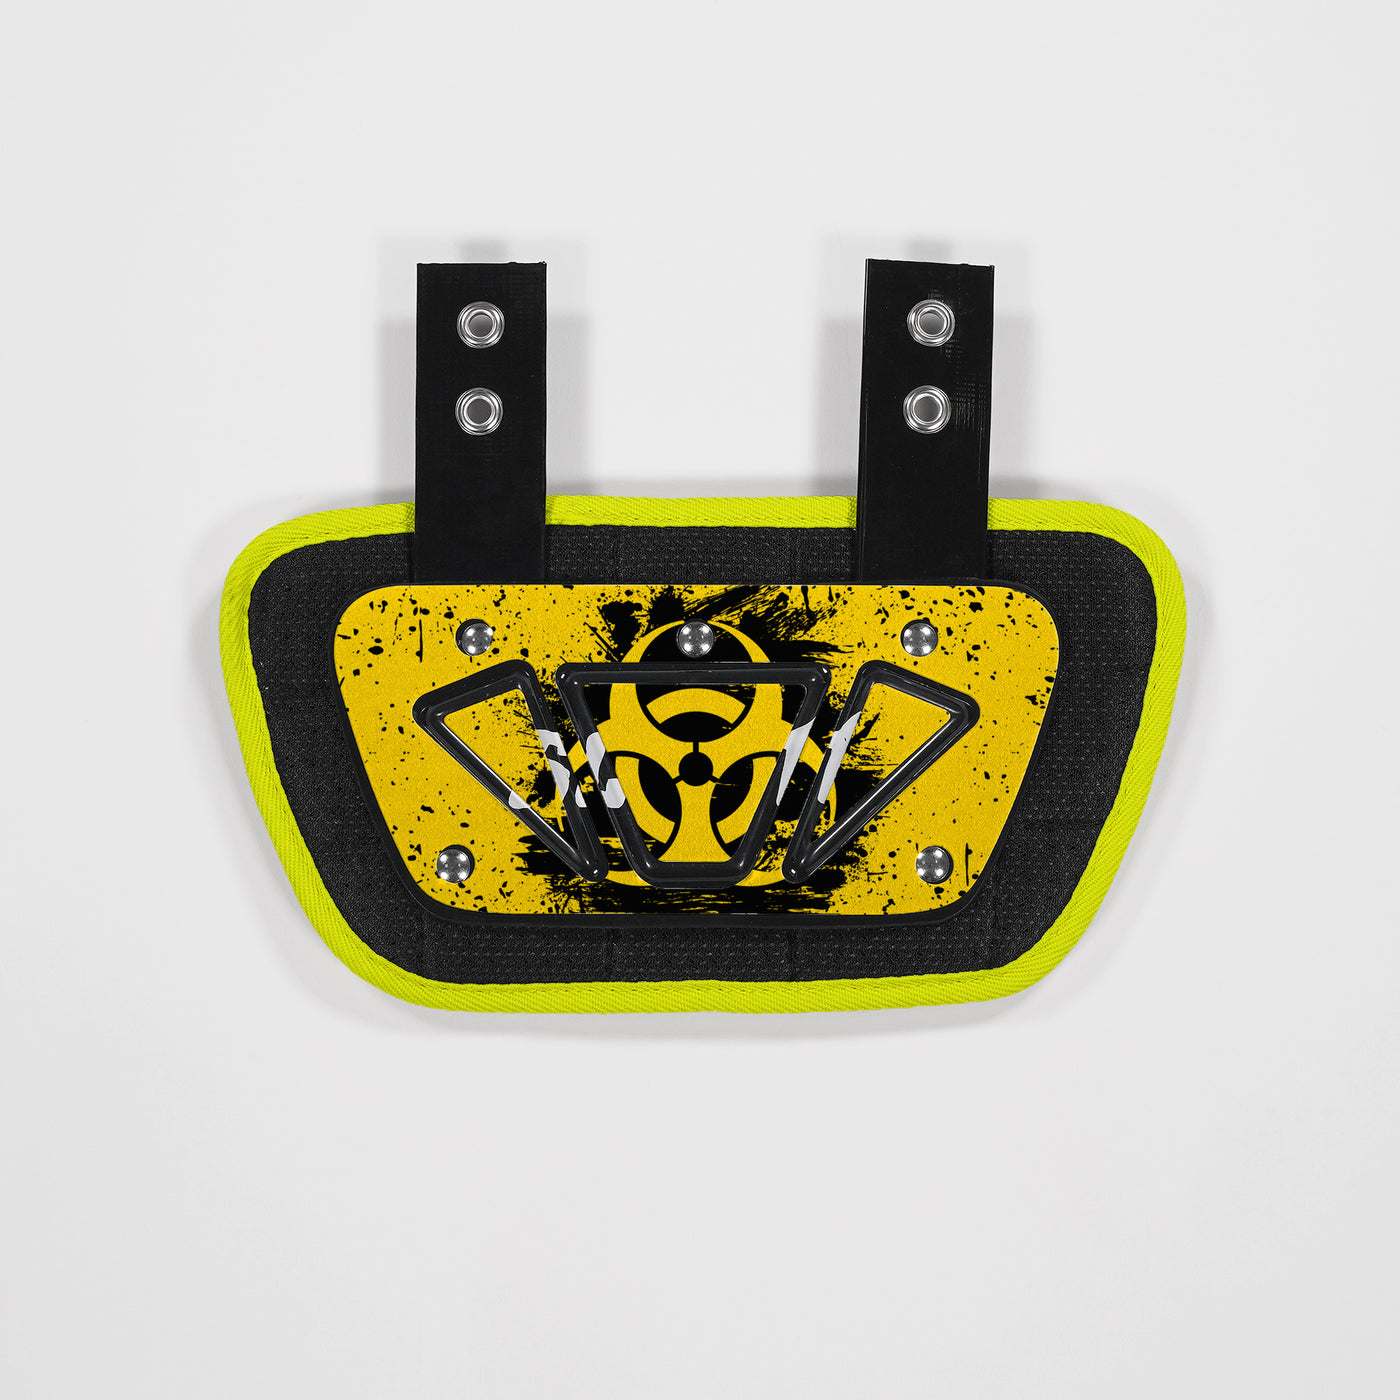 Biohazard Grunge Sticker for Back Plate